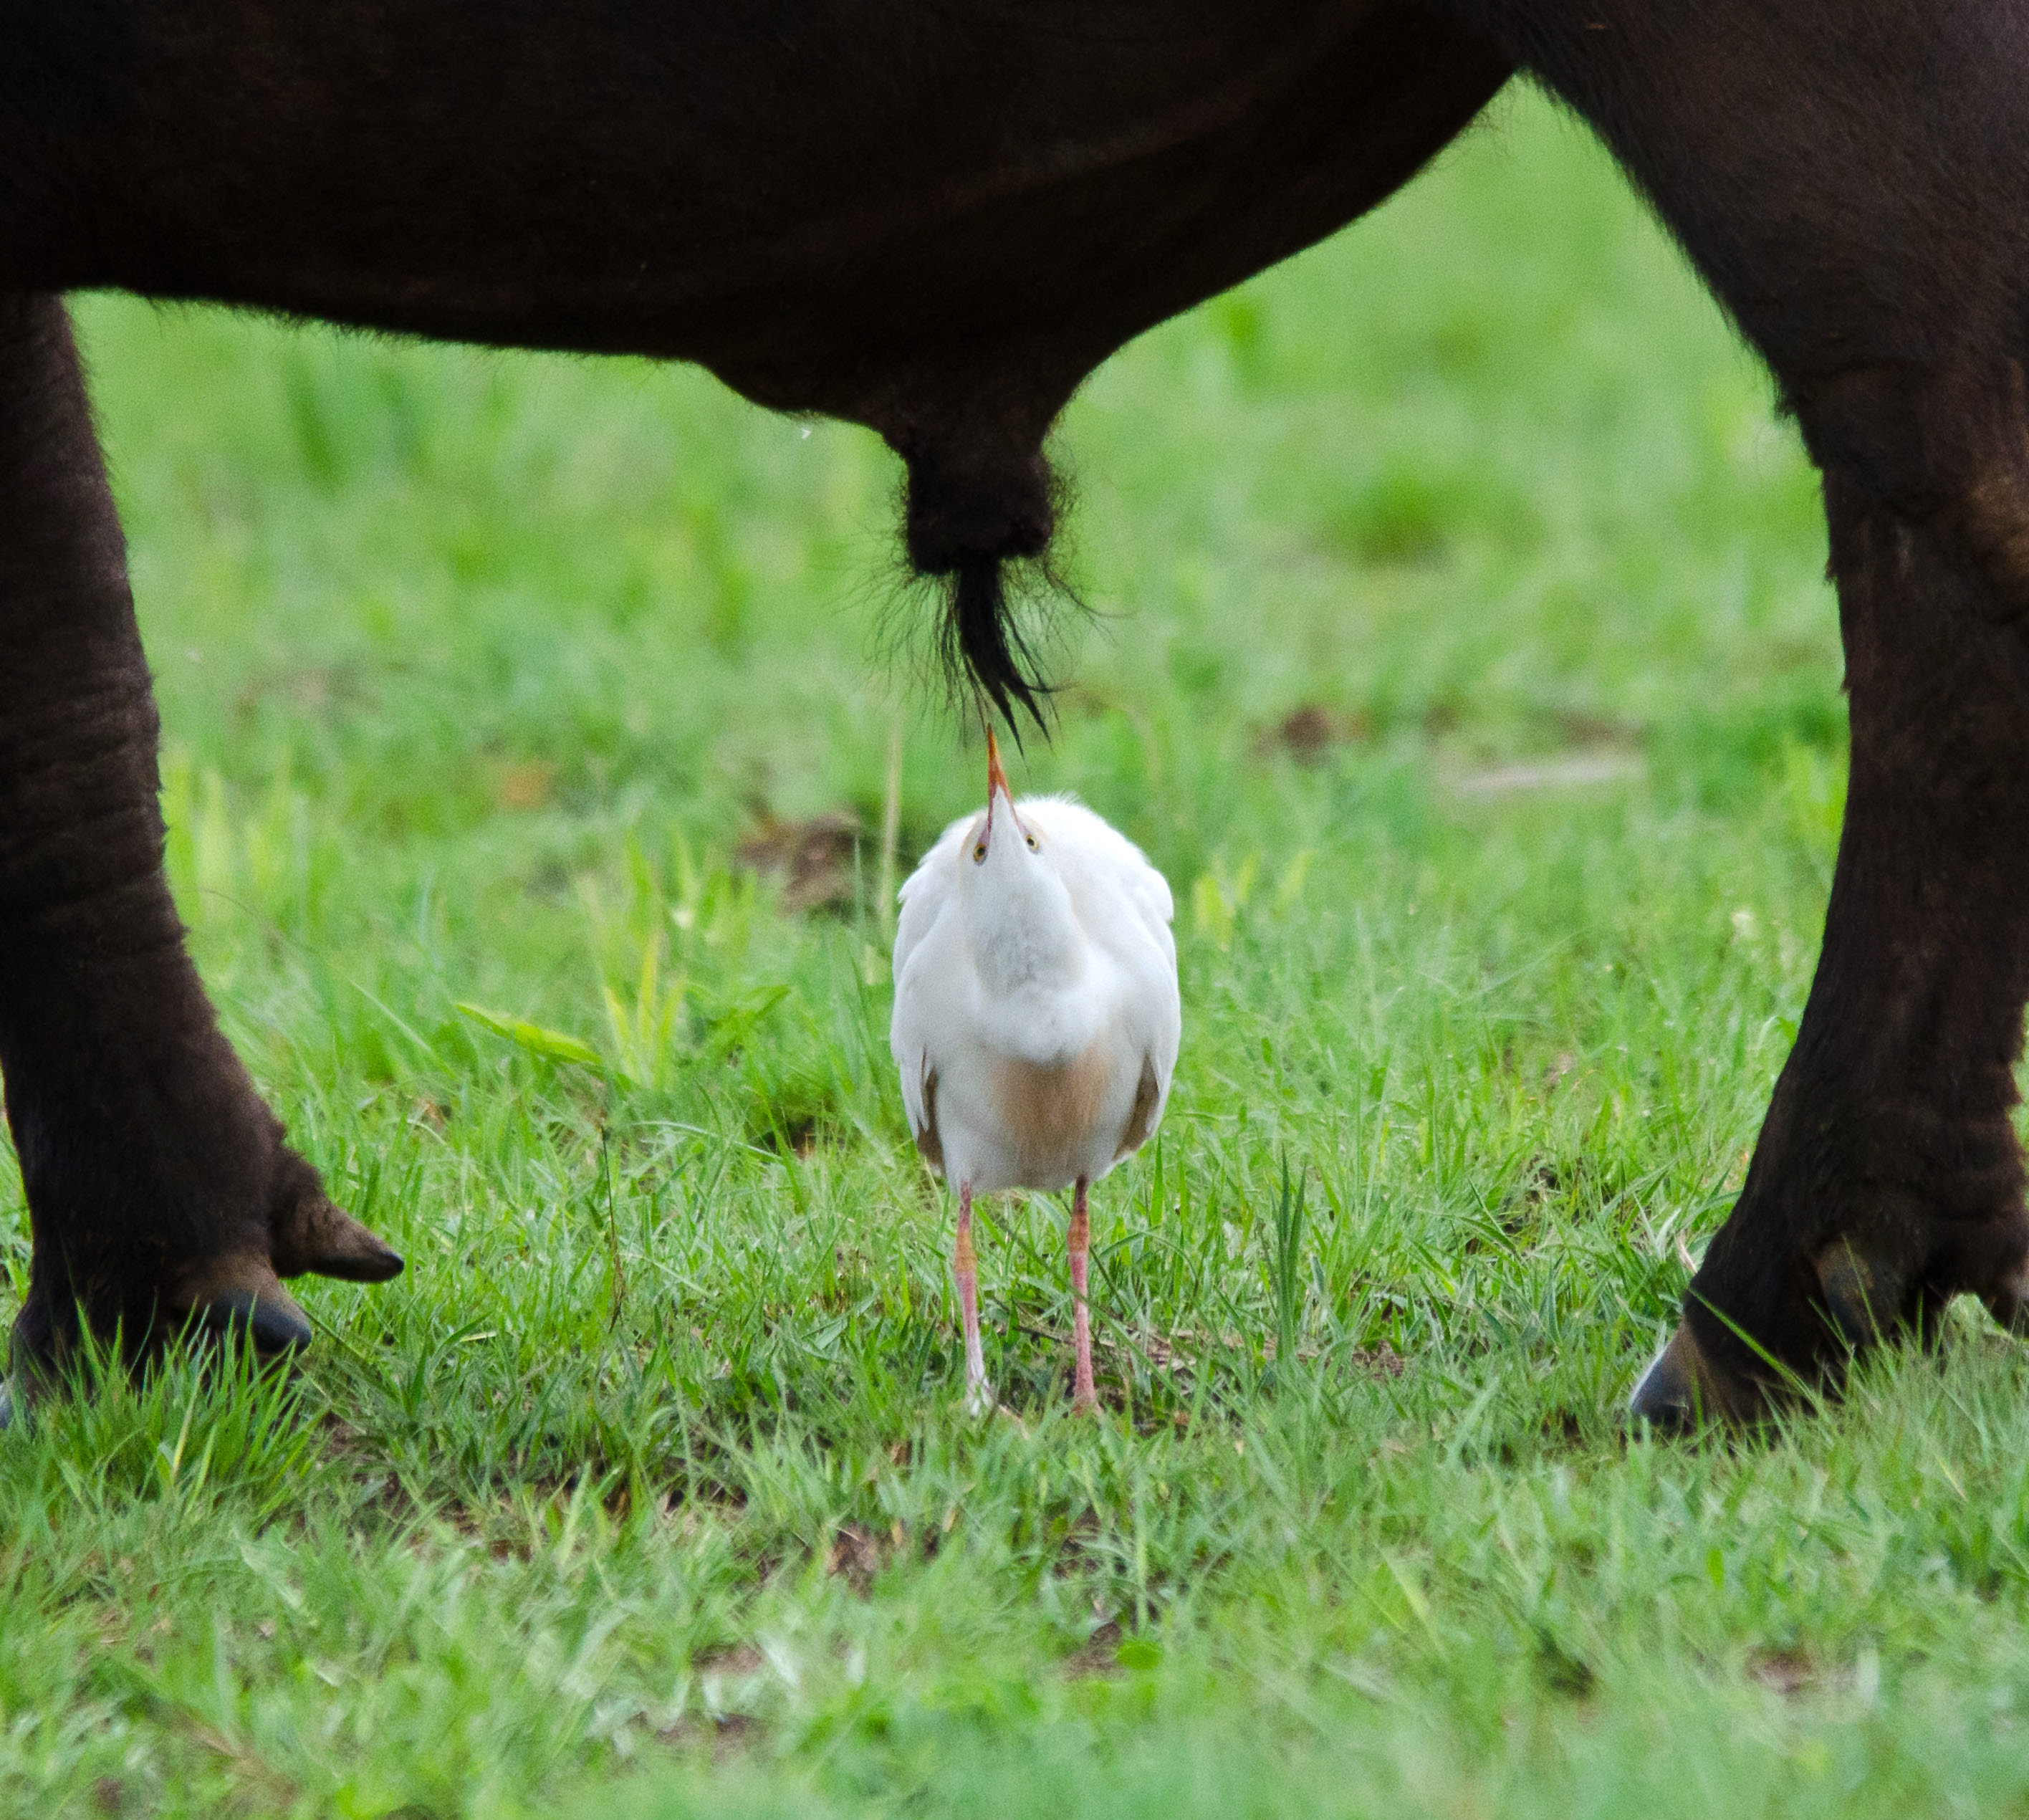 Um pequeno pássaro fica abaixo dos órgãos genitais de um búfalo.